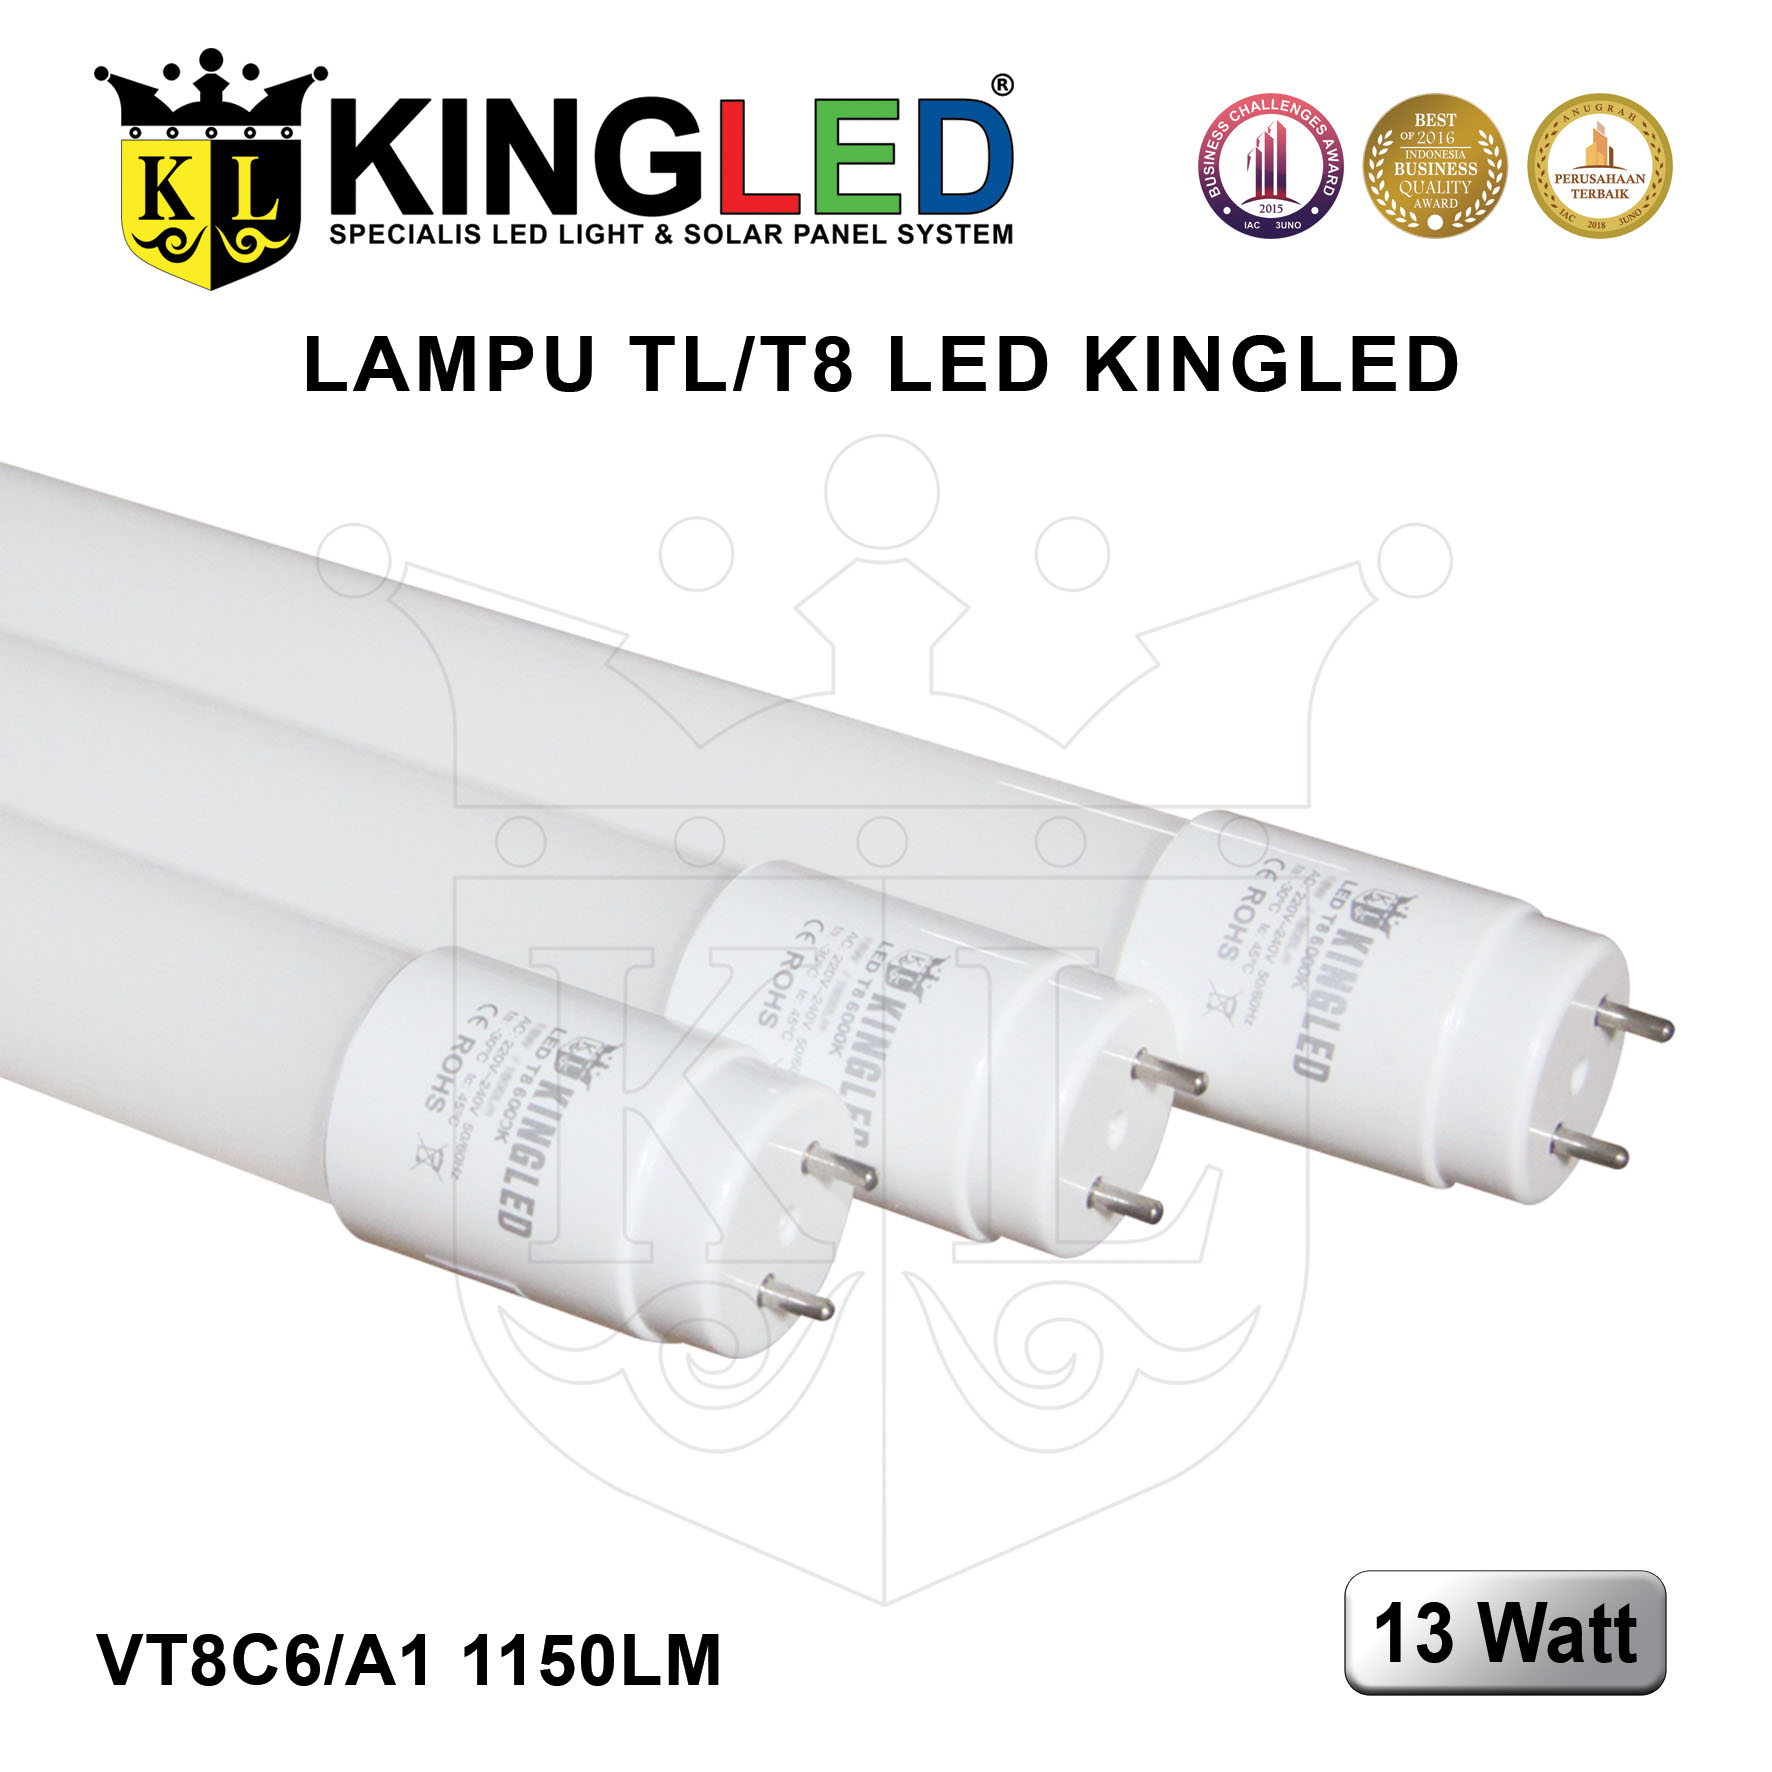 Lampu TL T8 LED 13 Watt / Tube T8 13 Watt